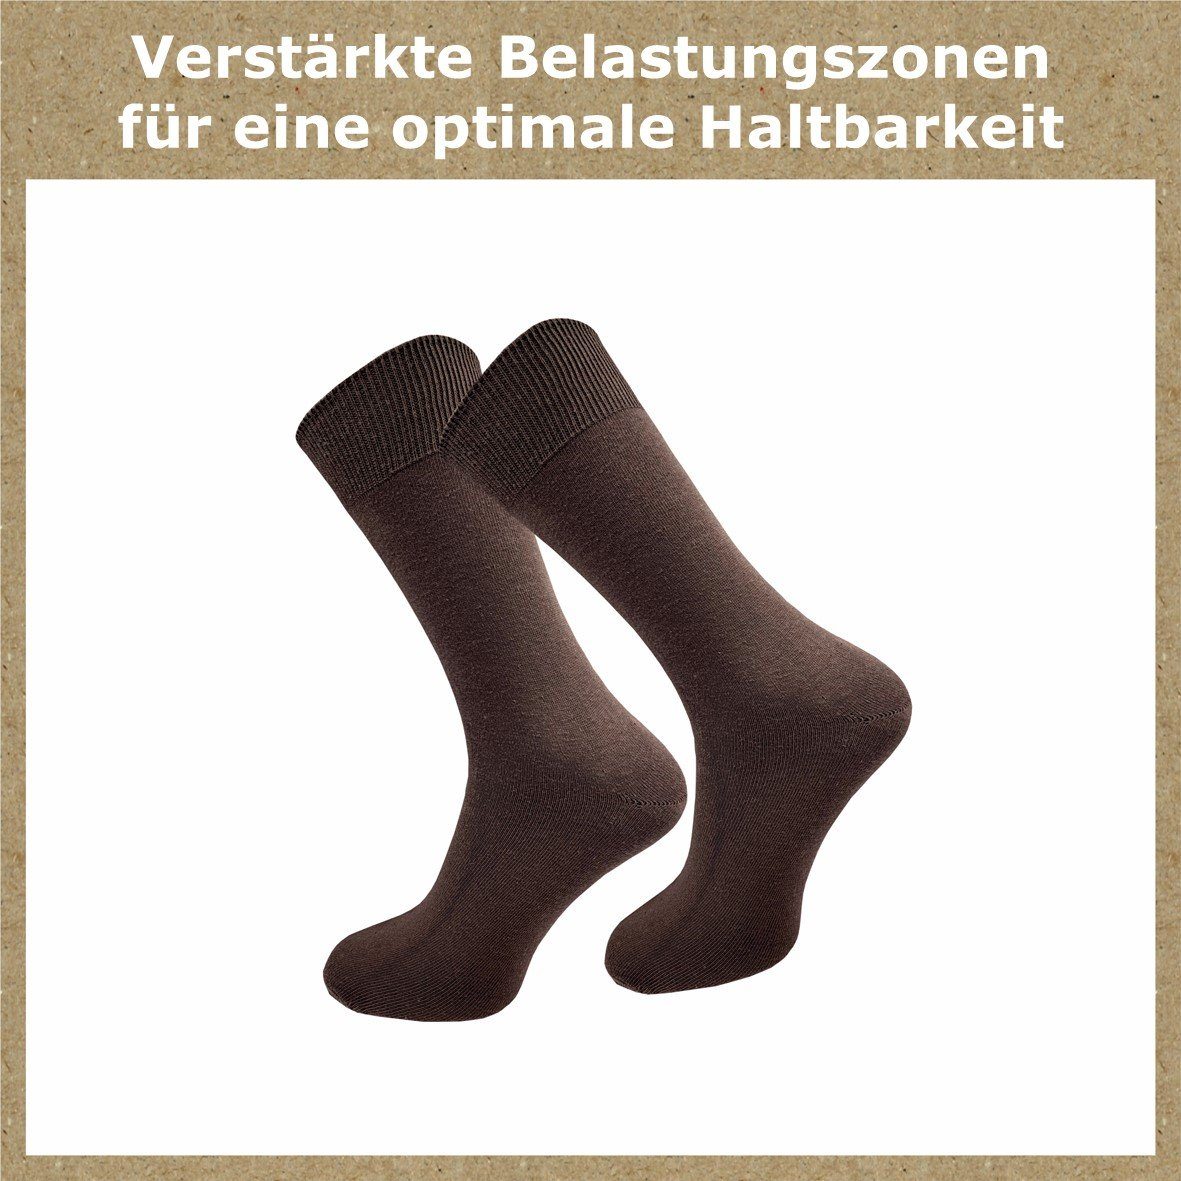 ideale - Herren für Paar) Baumwolle Farbkombinationen 100% Gummidruck in dunkle Socken Ihres Sortiments Basicsocken 3 (10 aus natur-, Ergänzung blau- ohne & GAWILO natur Töne Töne